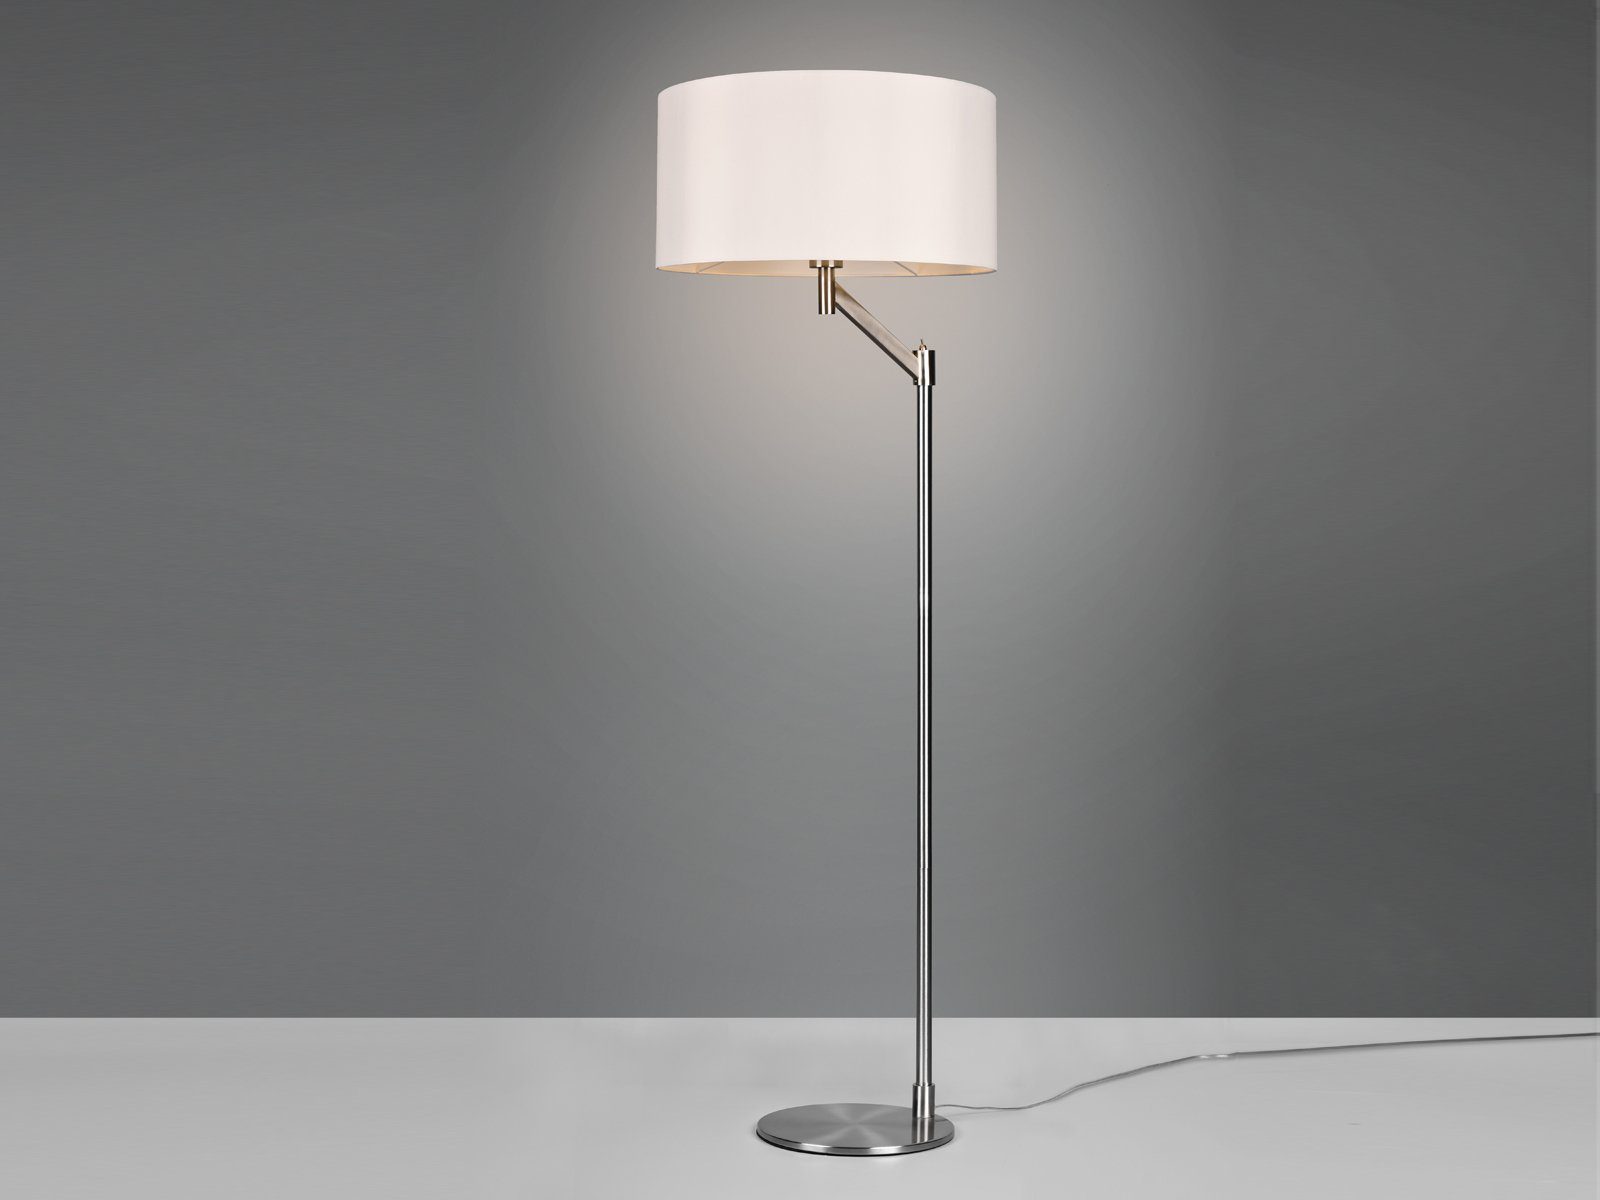 Silber matt Design-klassiker, wechselbar, Stehlampe, Bauhaus Weiß Warmweiß, LED / Lampenschirm-e Silber Höhe groß, 158cm Stoff meineWunschleuchte LED